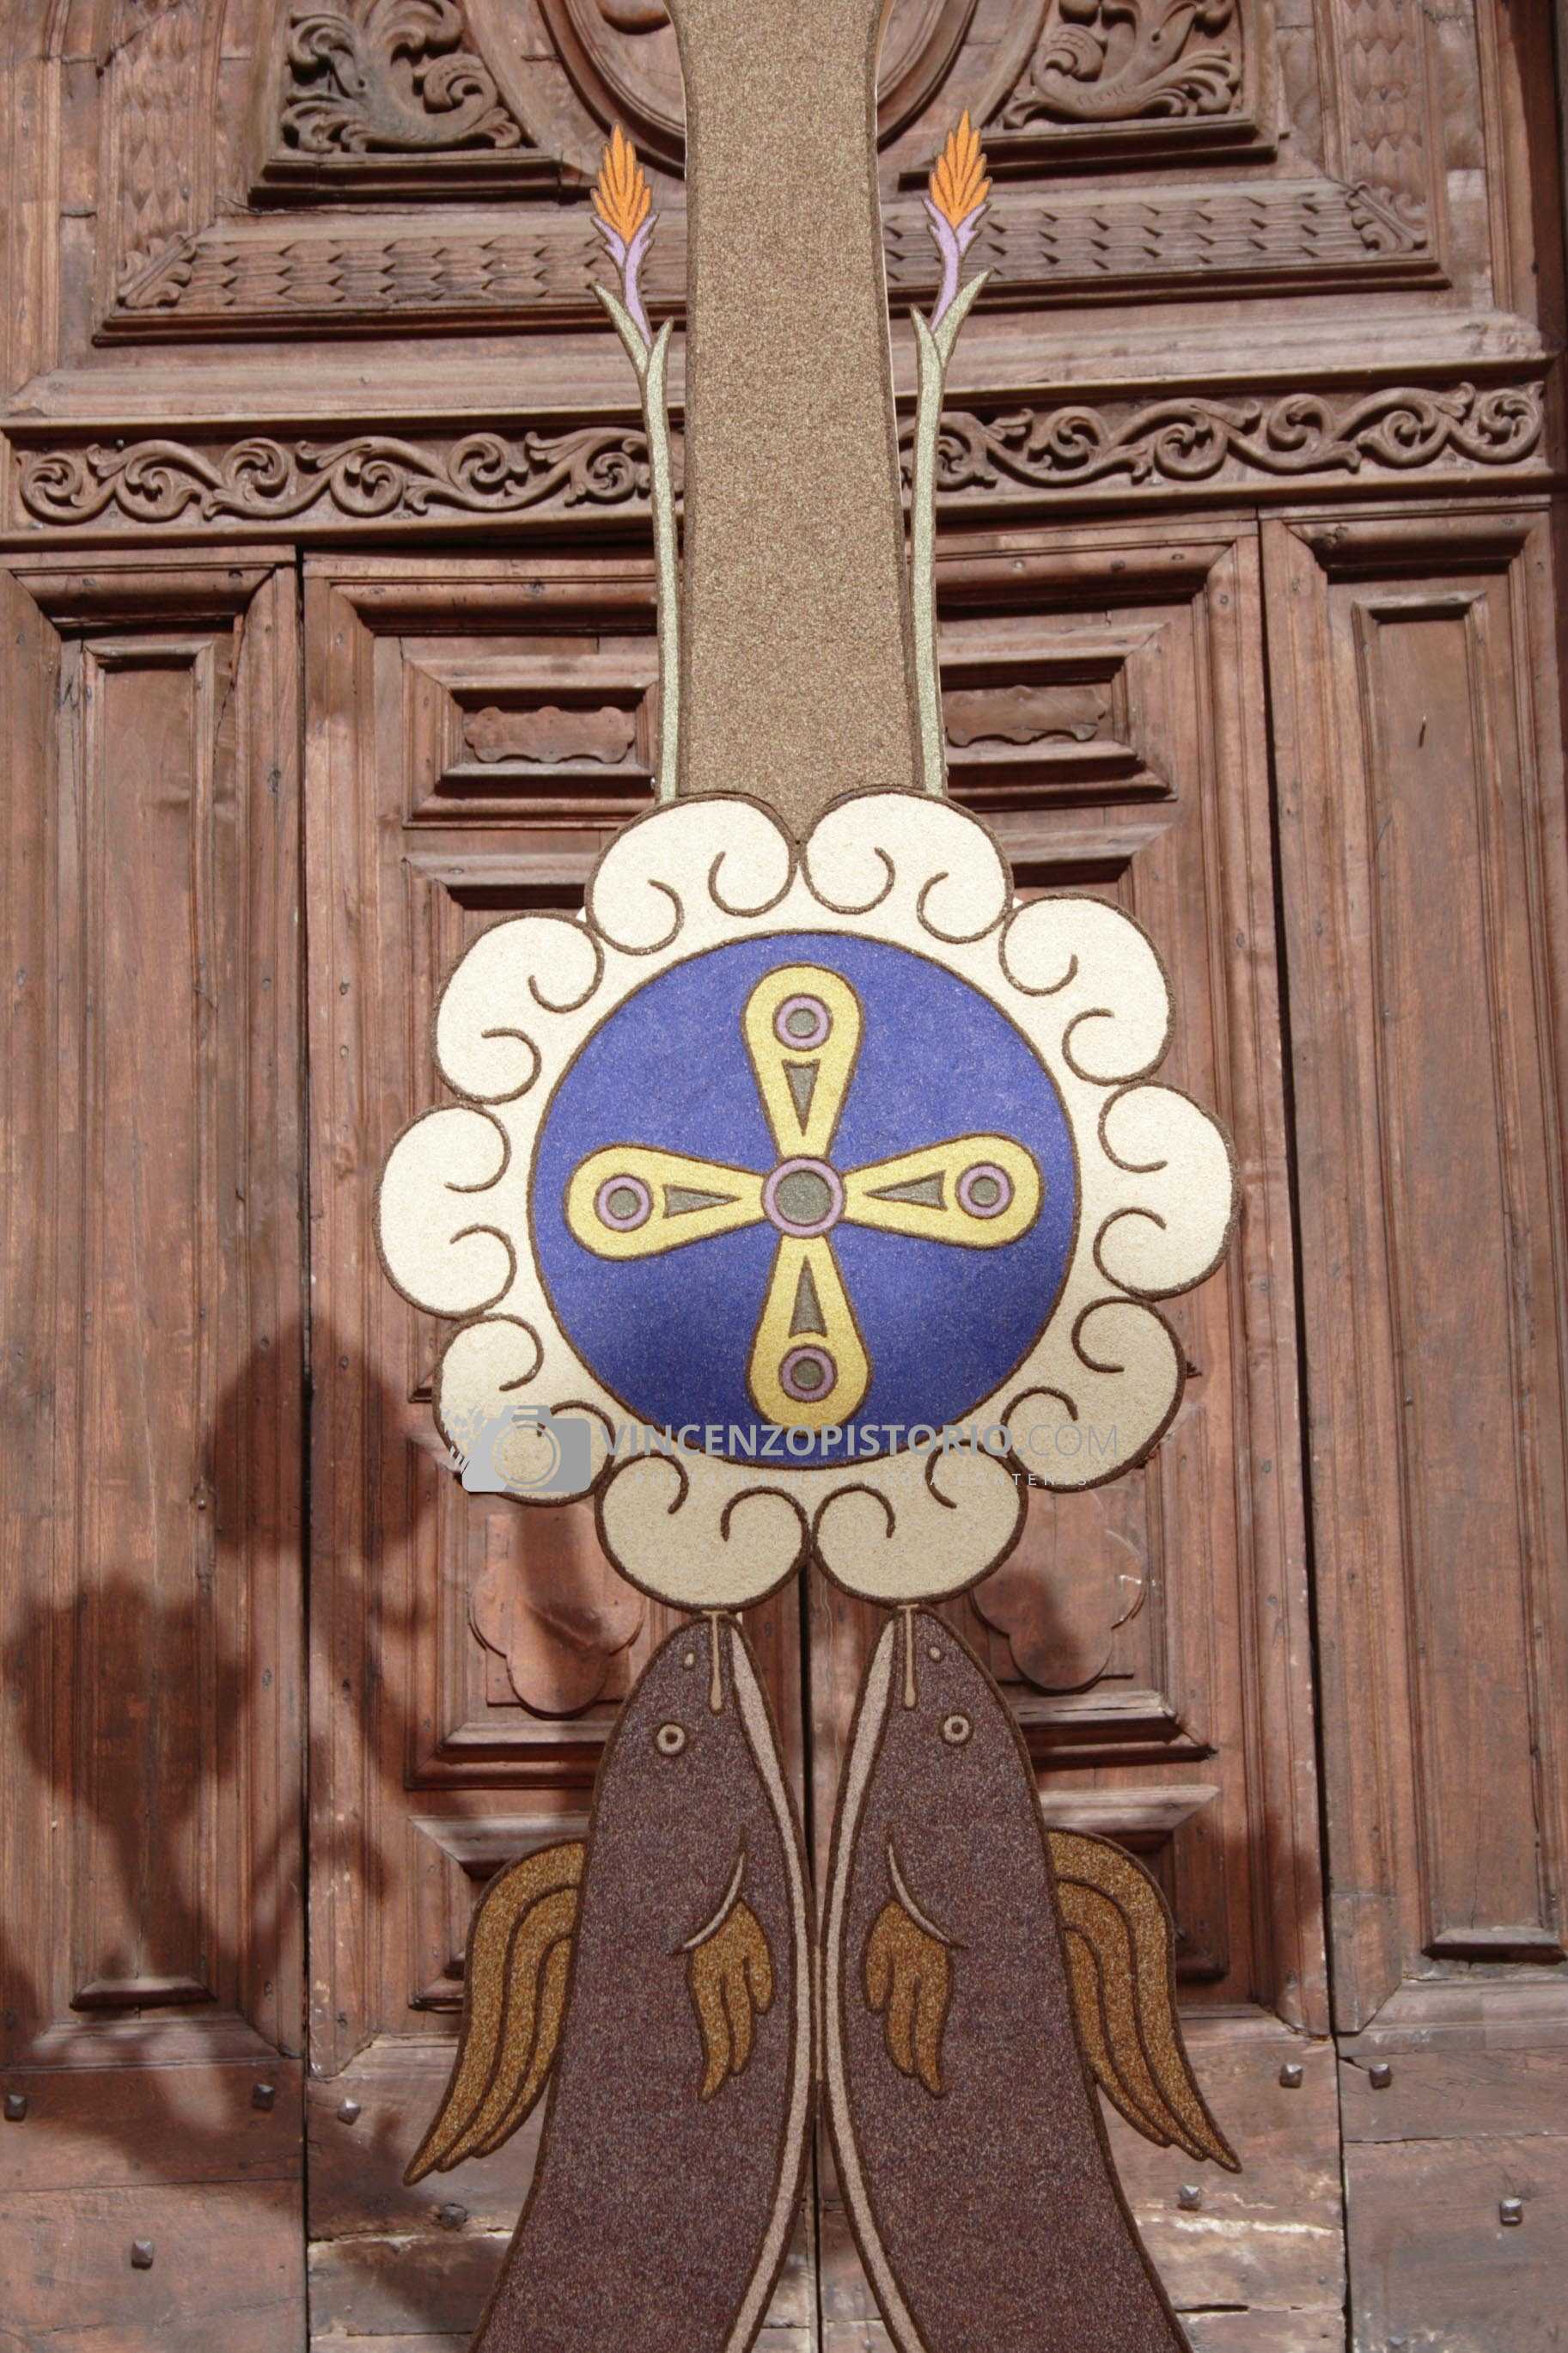 A particular cross